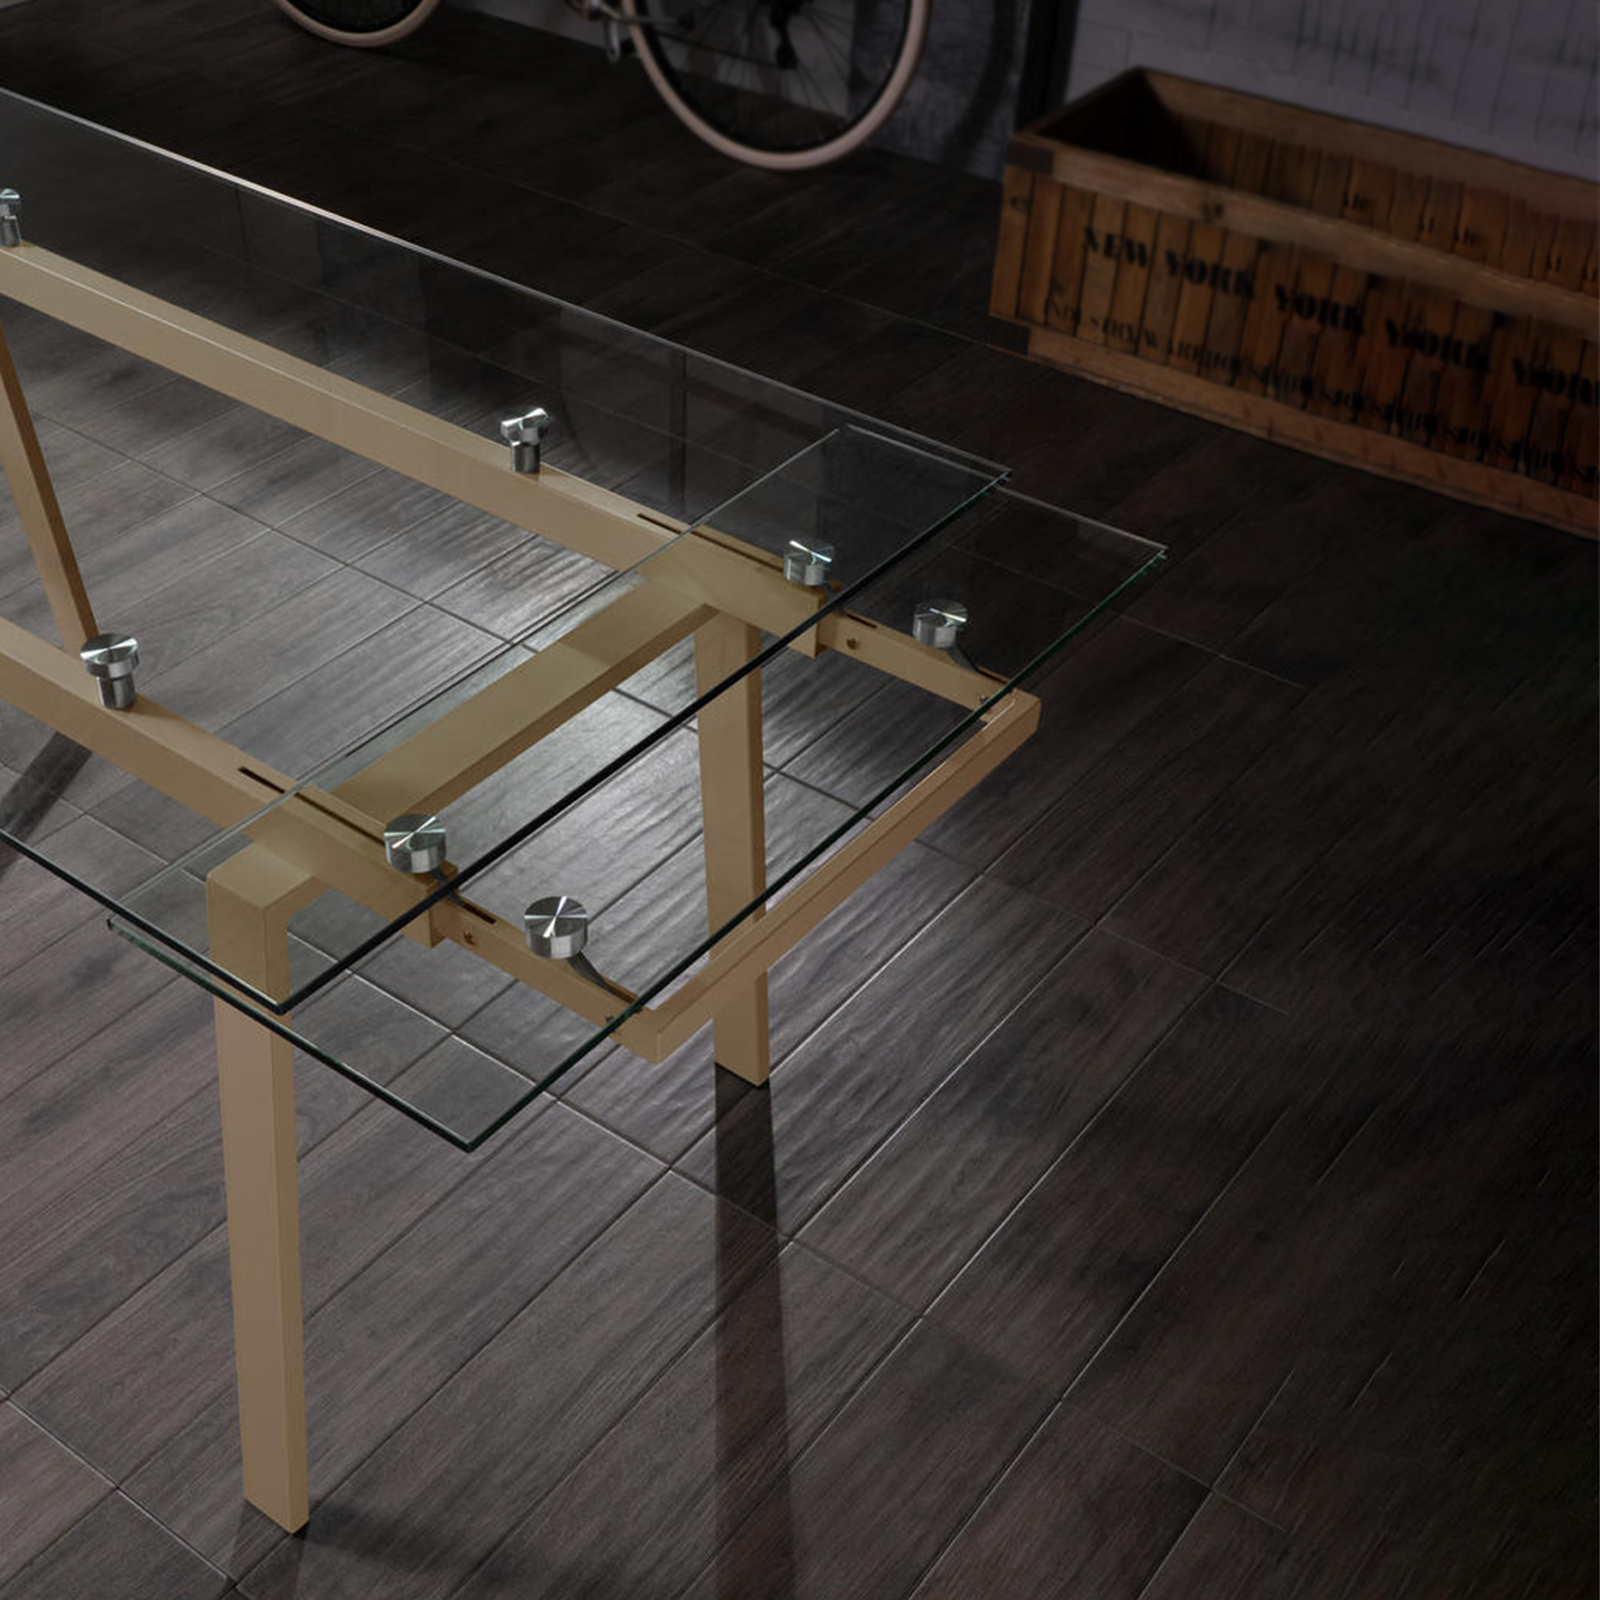 Table extensible en verre trempé pieds métal Tommy 140/200x80 cm 76h